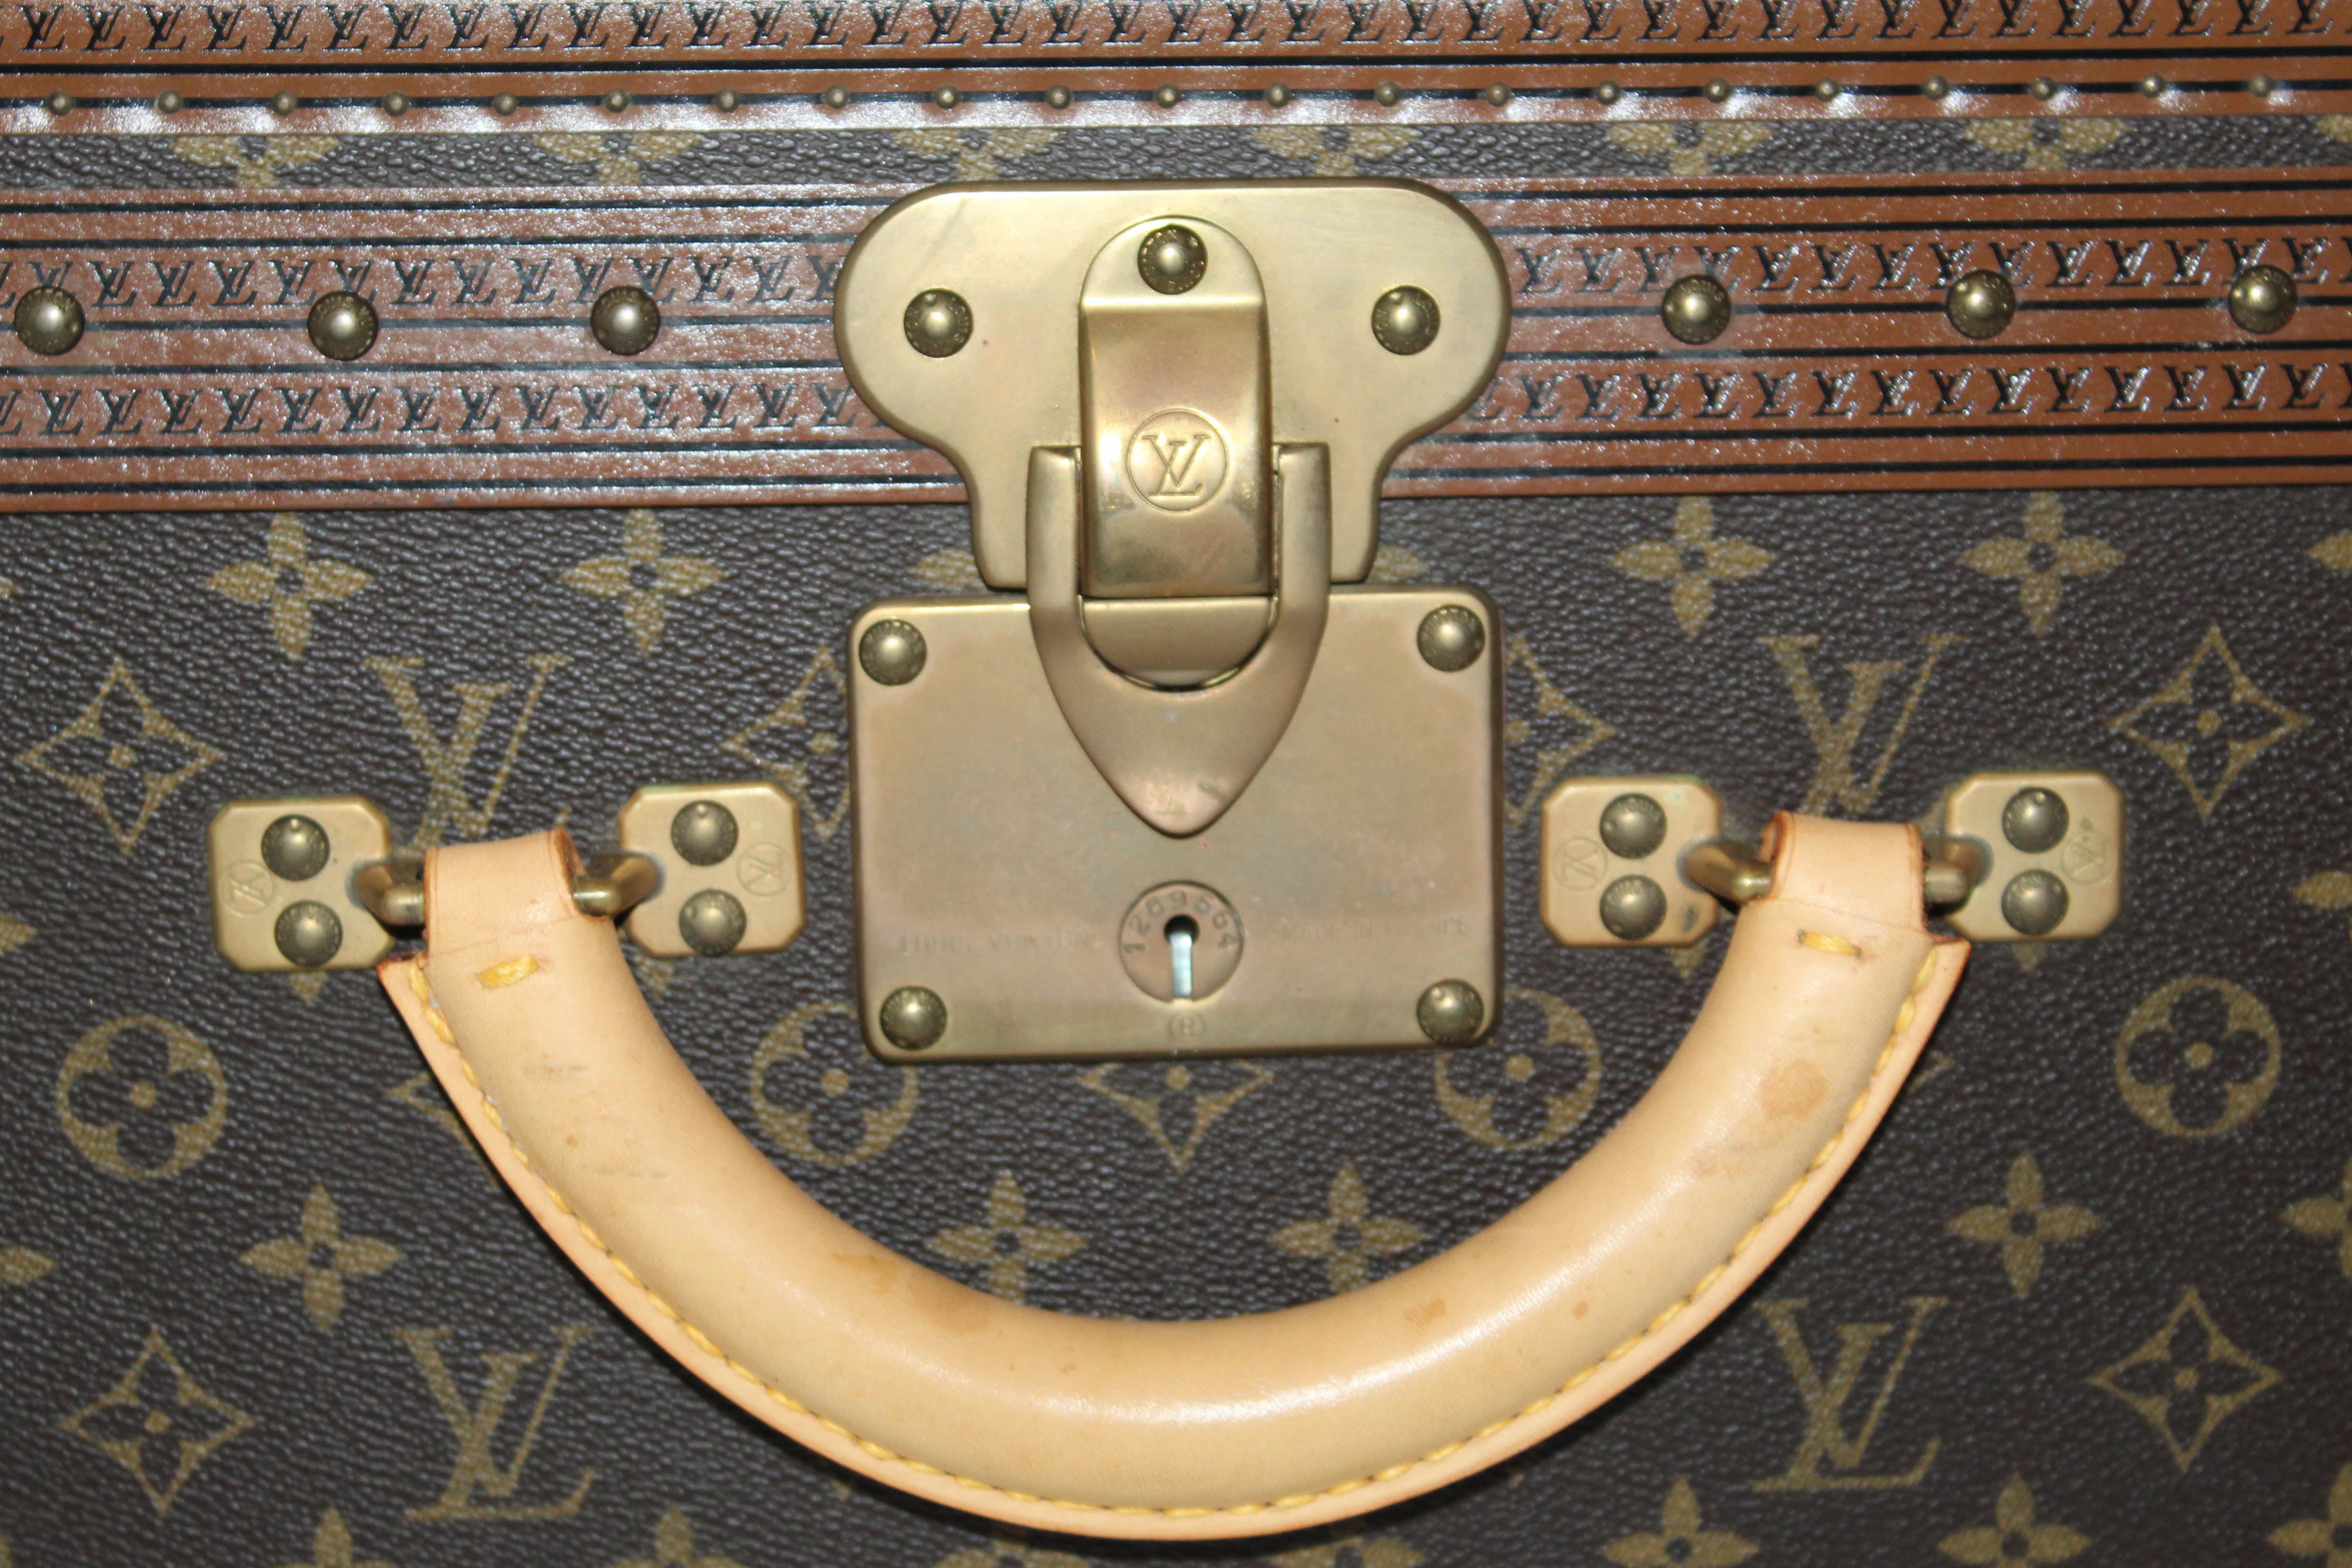 Lot - A Louis Vuitton ''Alzer 75'' hard suitcase